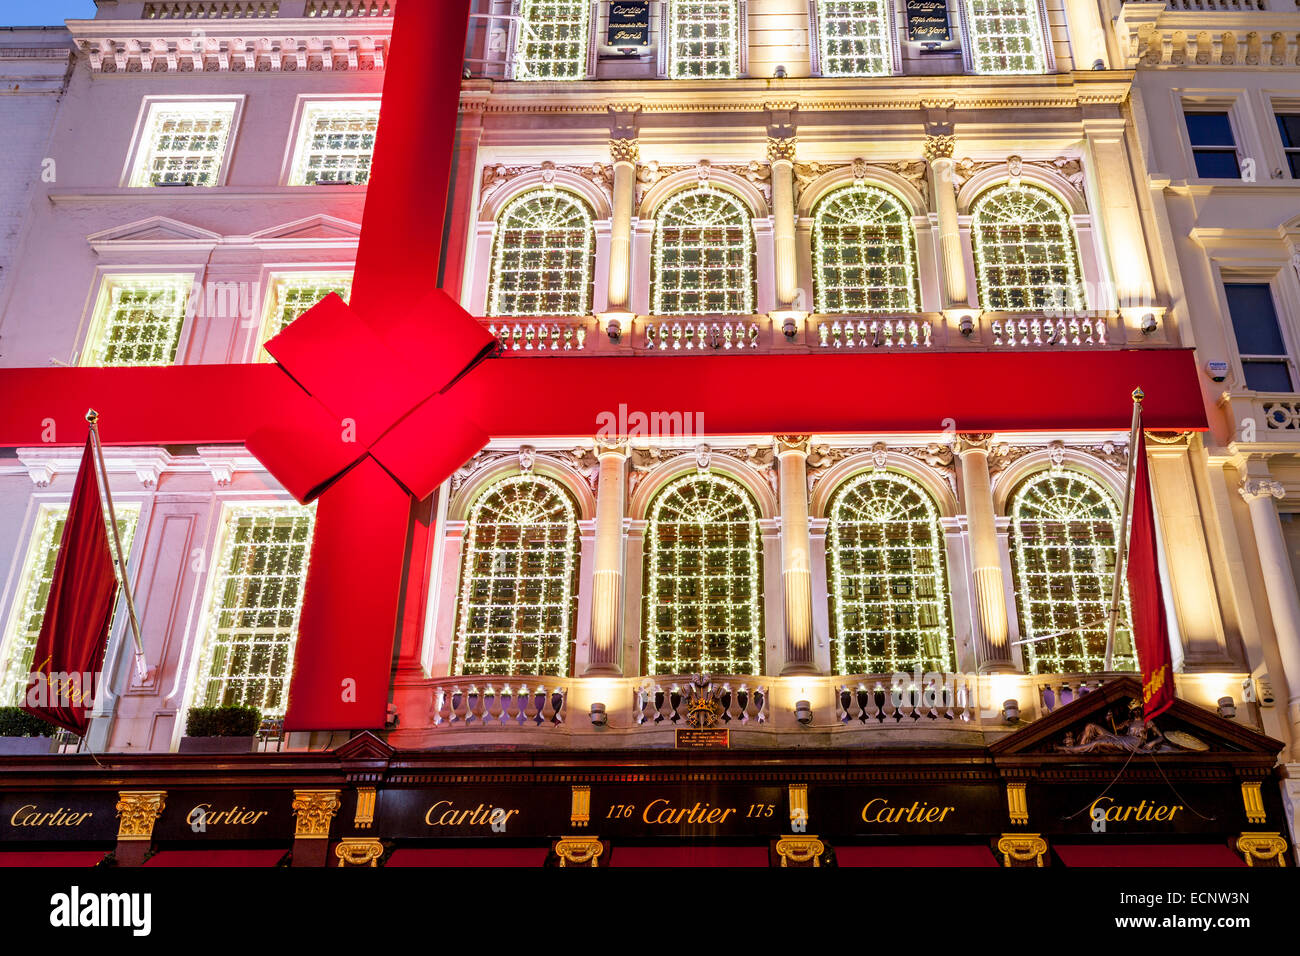 La Cartier Store In New Bond Street a Londra, Inghilterra Foto Stock